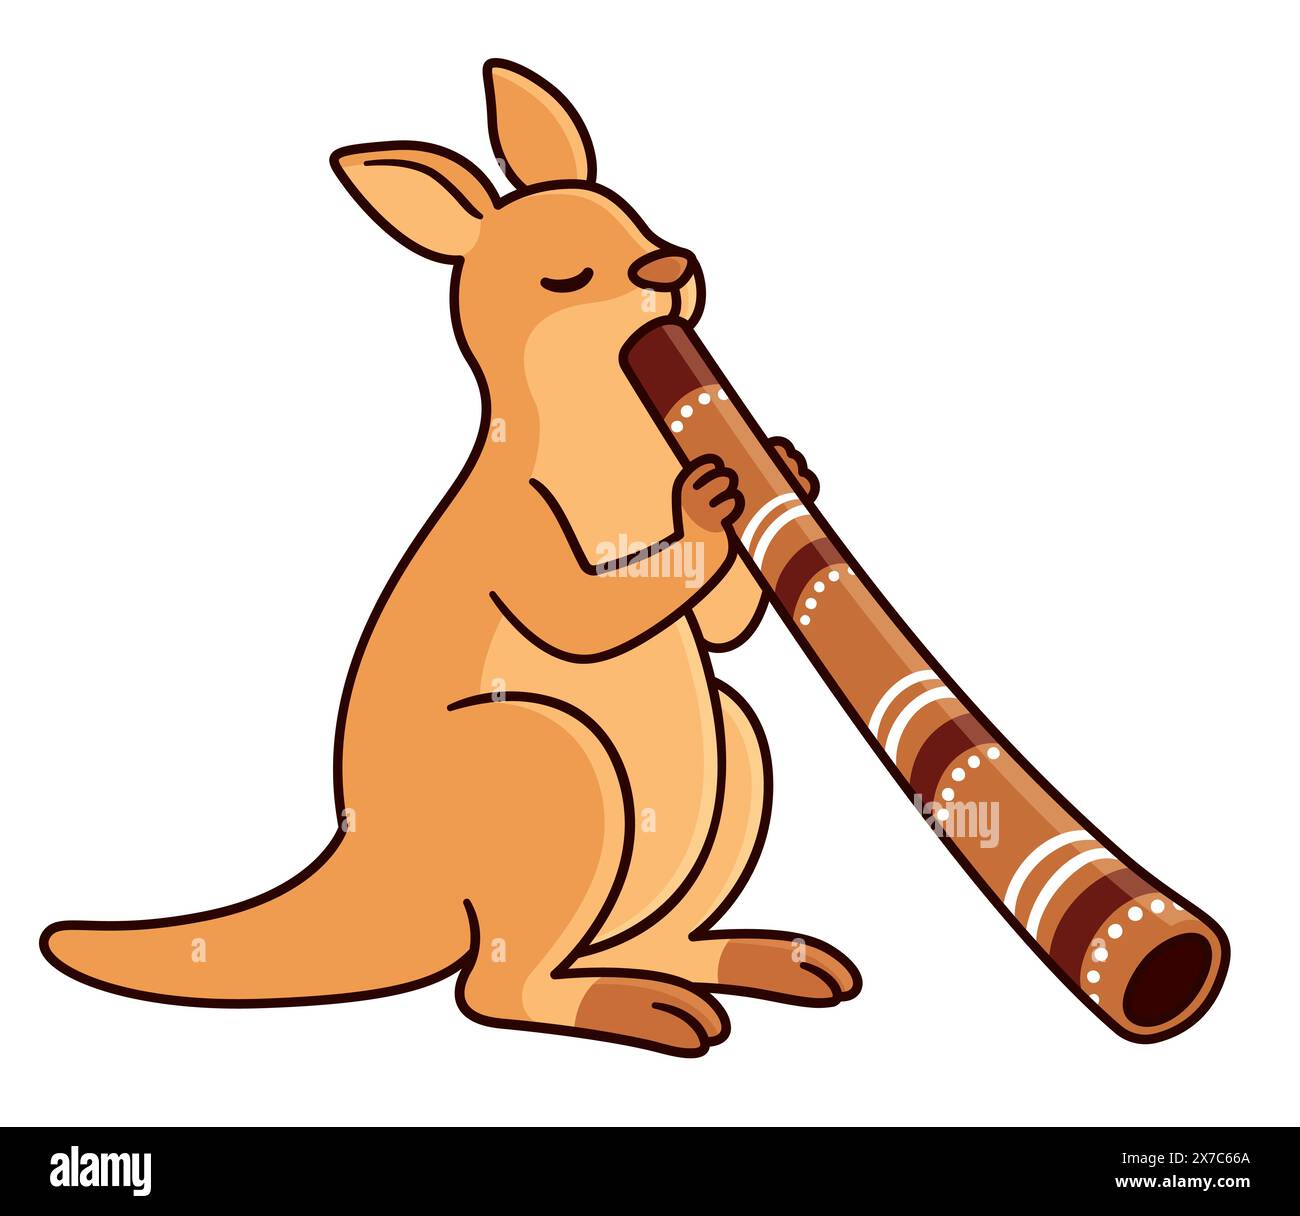 Kangourou de dessin animé jouant du didgeridoo. Personnage drôle, symbole australien. Illustration clip art vectorielle. Illustration de Vecteur